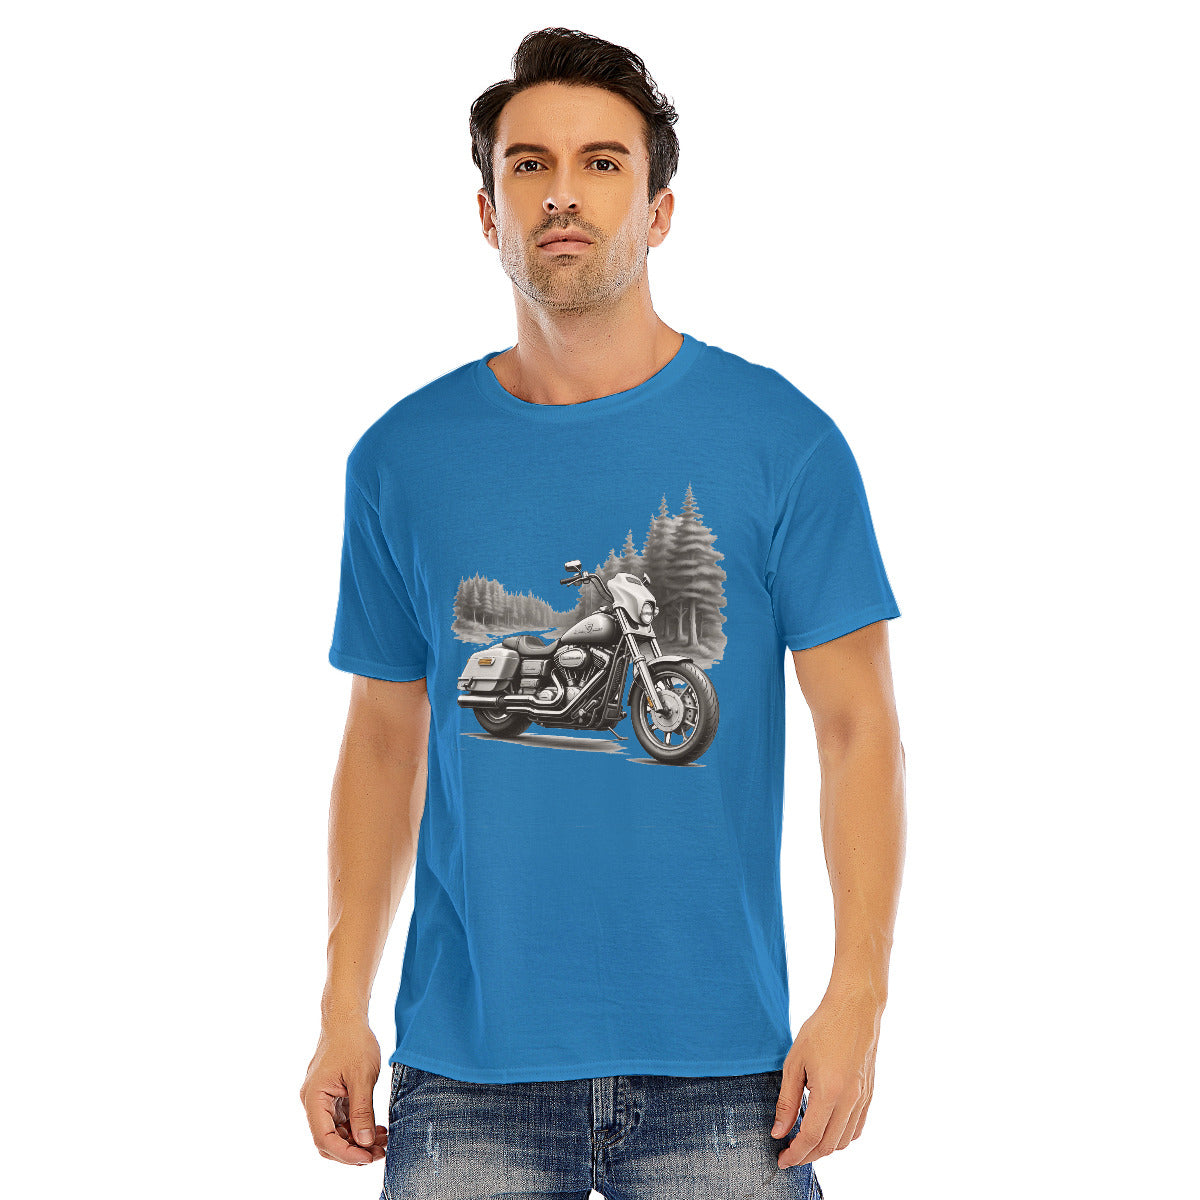 Motorcycle 111 -- Unisex O-neck Short Sleeve T-shirt